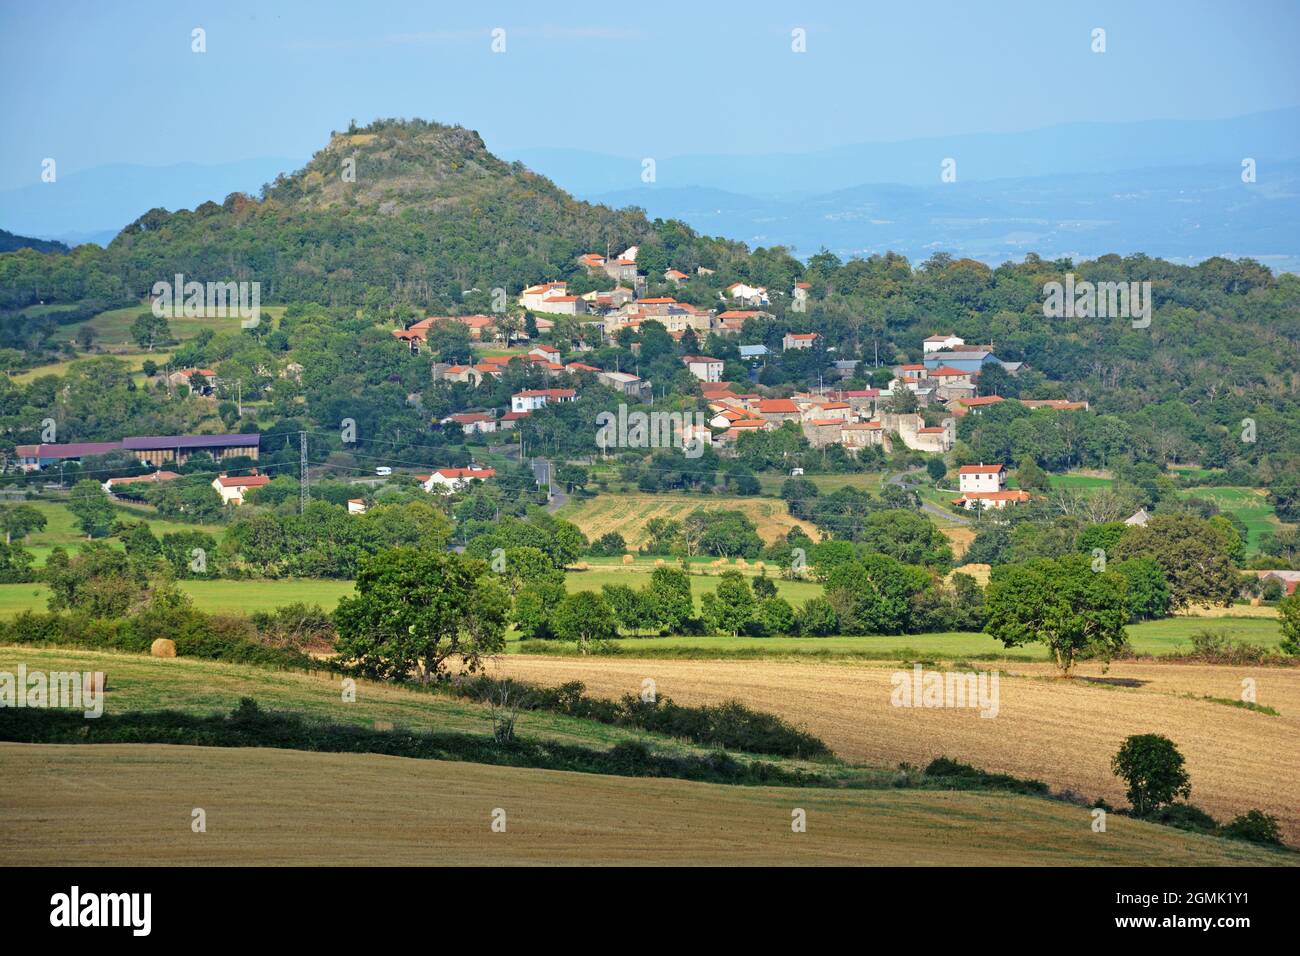 The village of Vodable, Puy-de-Dome, Auvergne-Rhone-Alpes, France Stock Photo